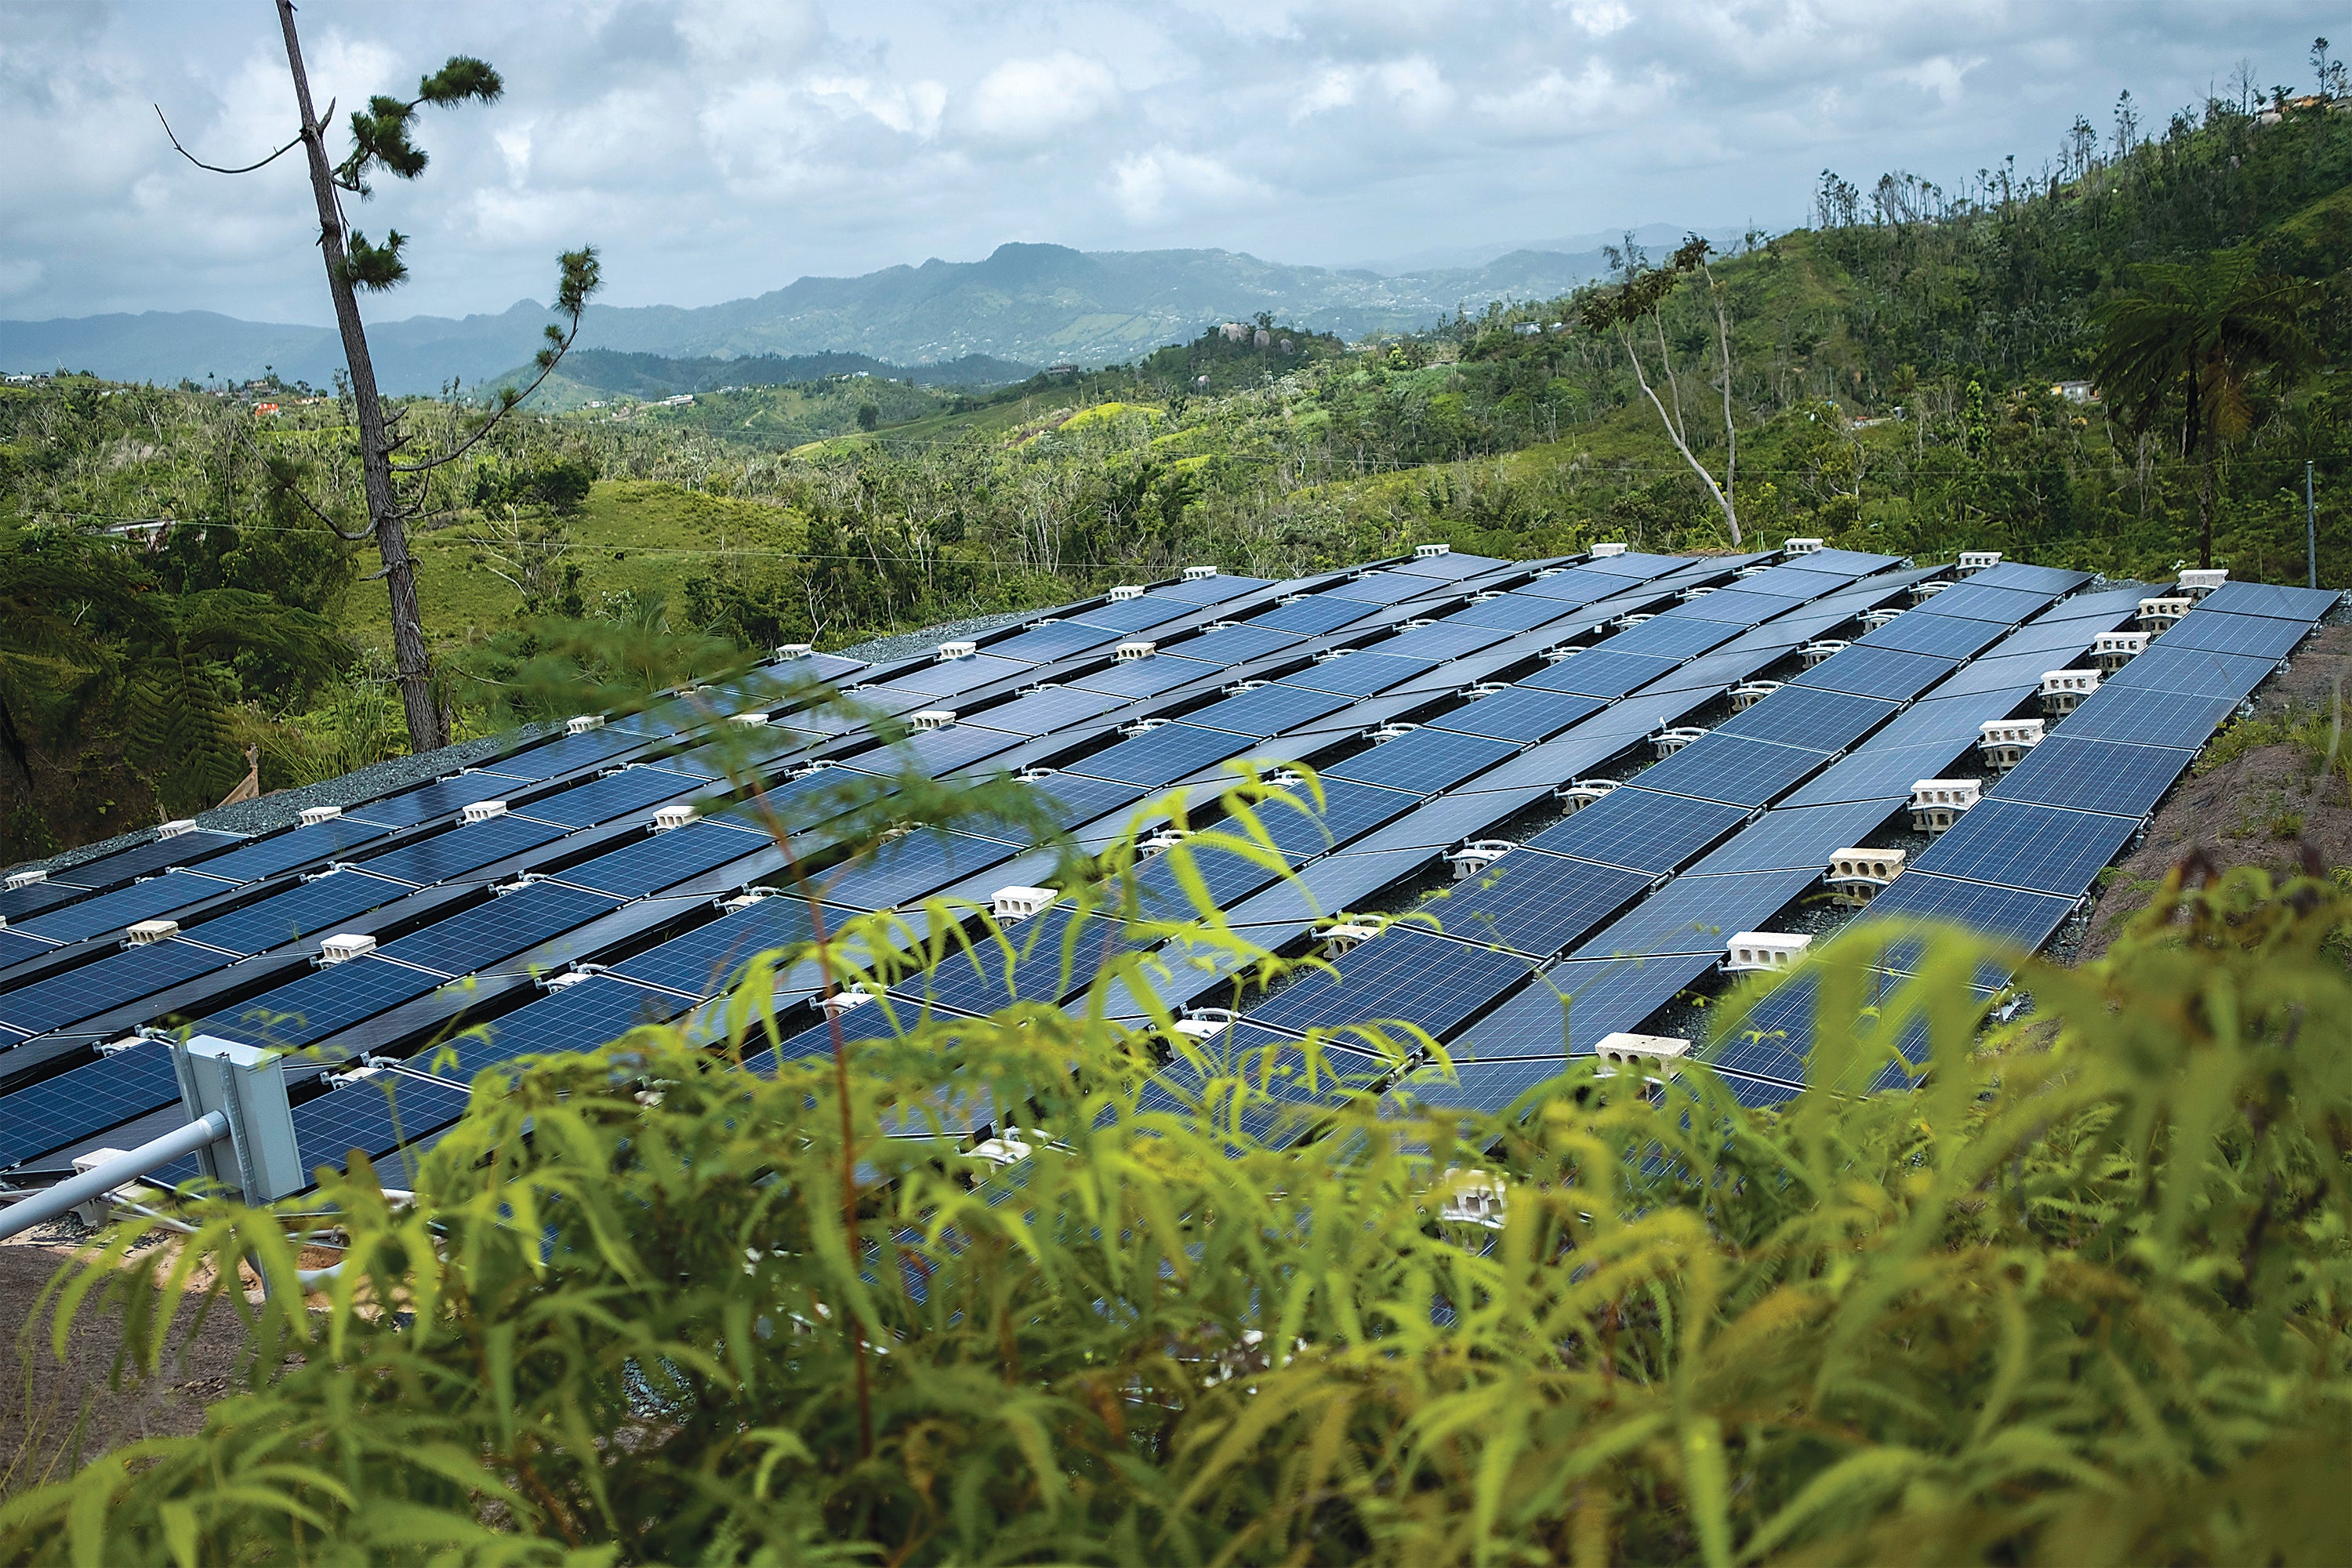 Solar panels power 12 homes in Las Piedras, Puerto Rico.